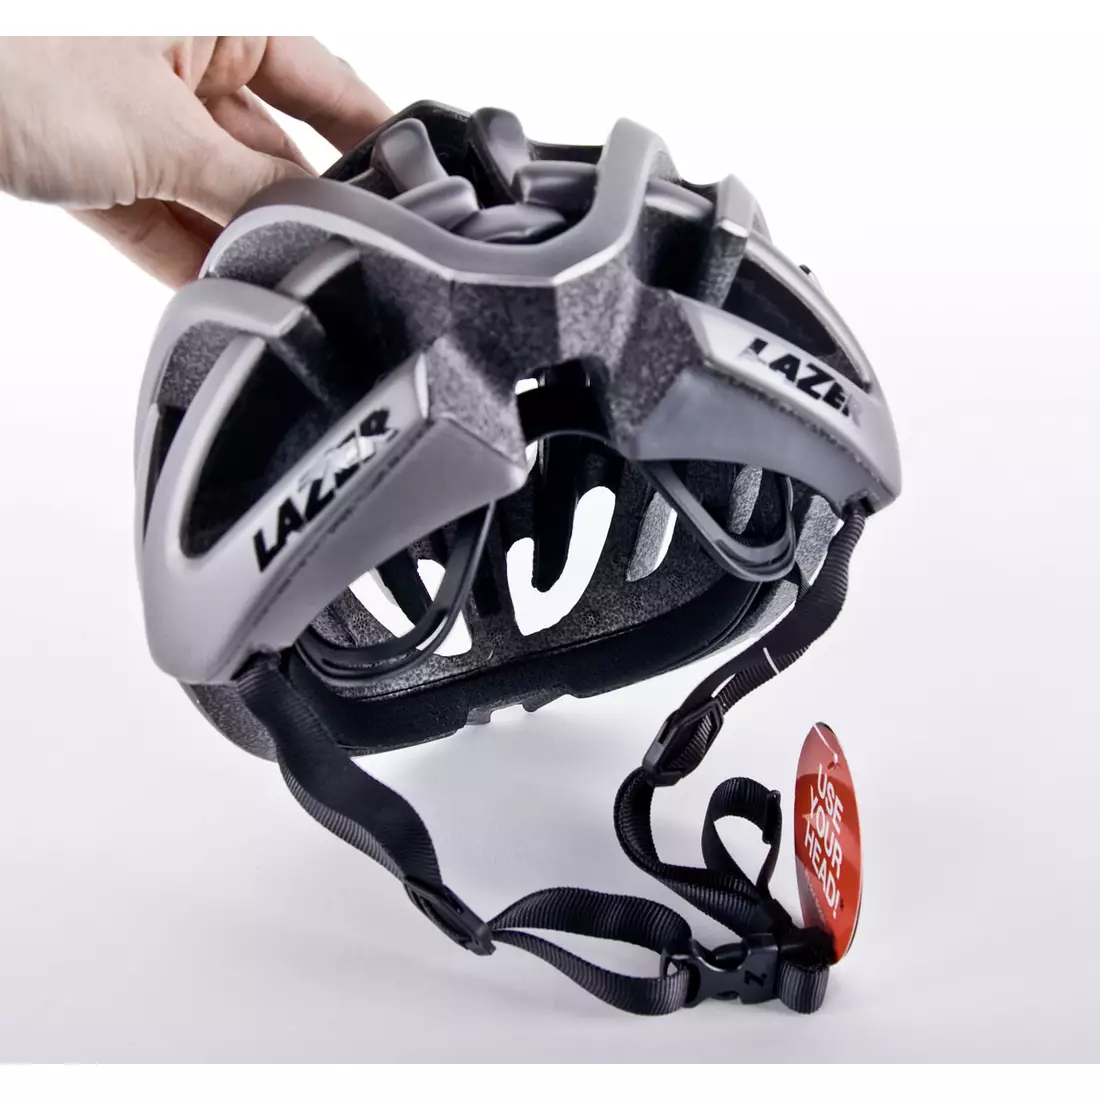 Silniční cyklistická helma LAZER BLADE+ Rollsys&amp;#x00AE; titan matt